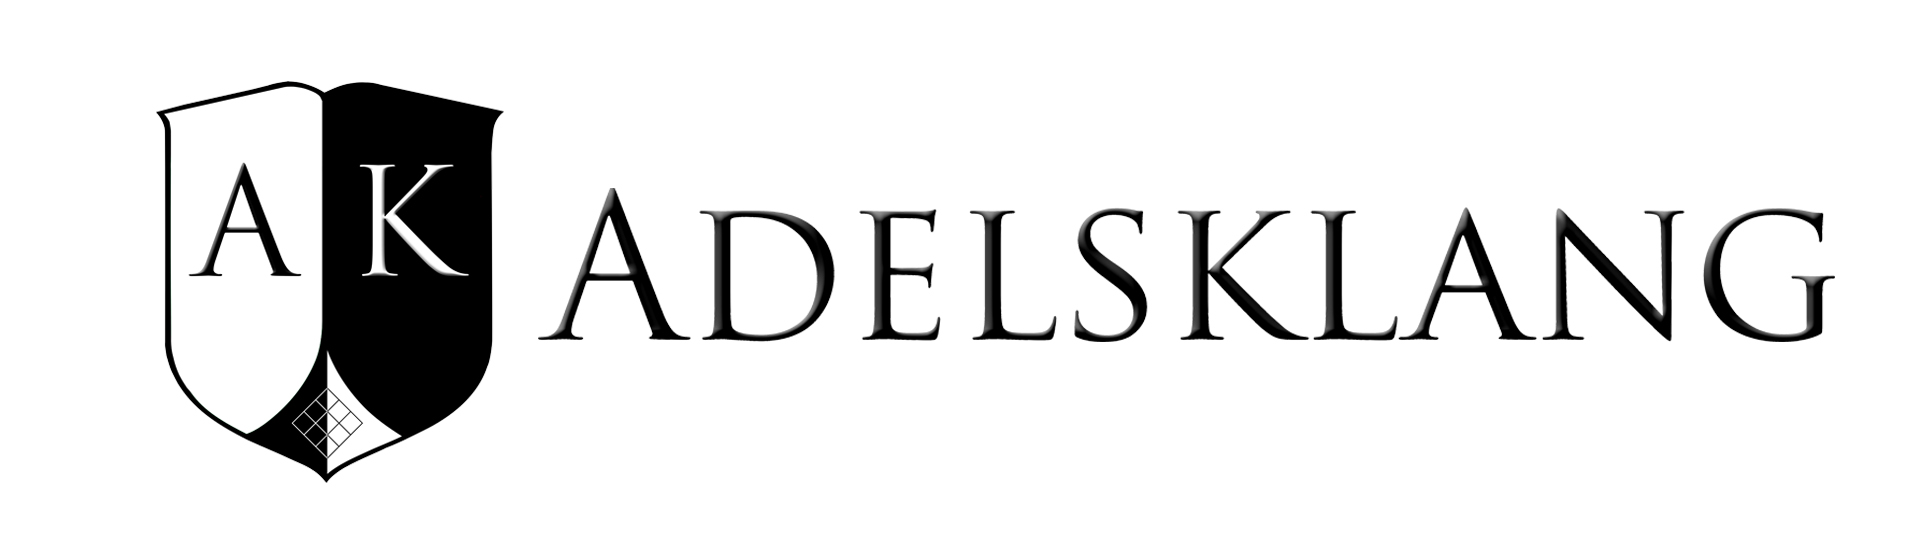 tl_files/dynamikks/Adelsklang/1. Adelsklang Logo quer.jpg